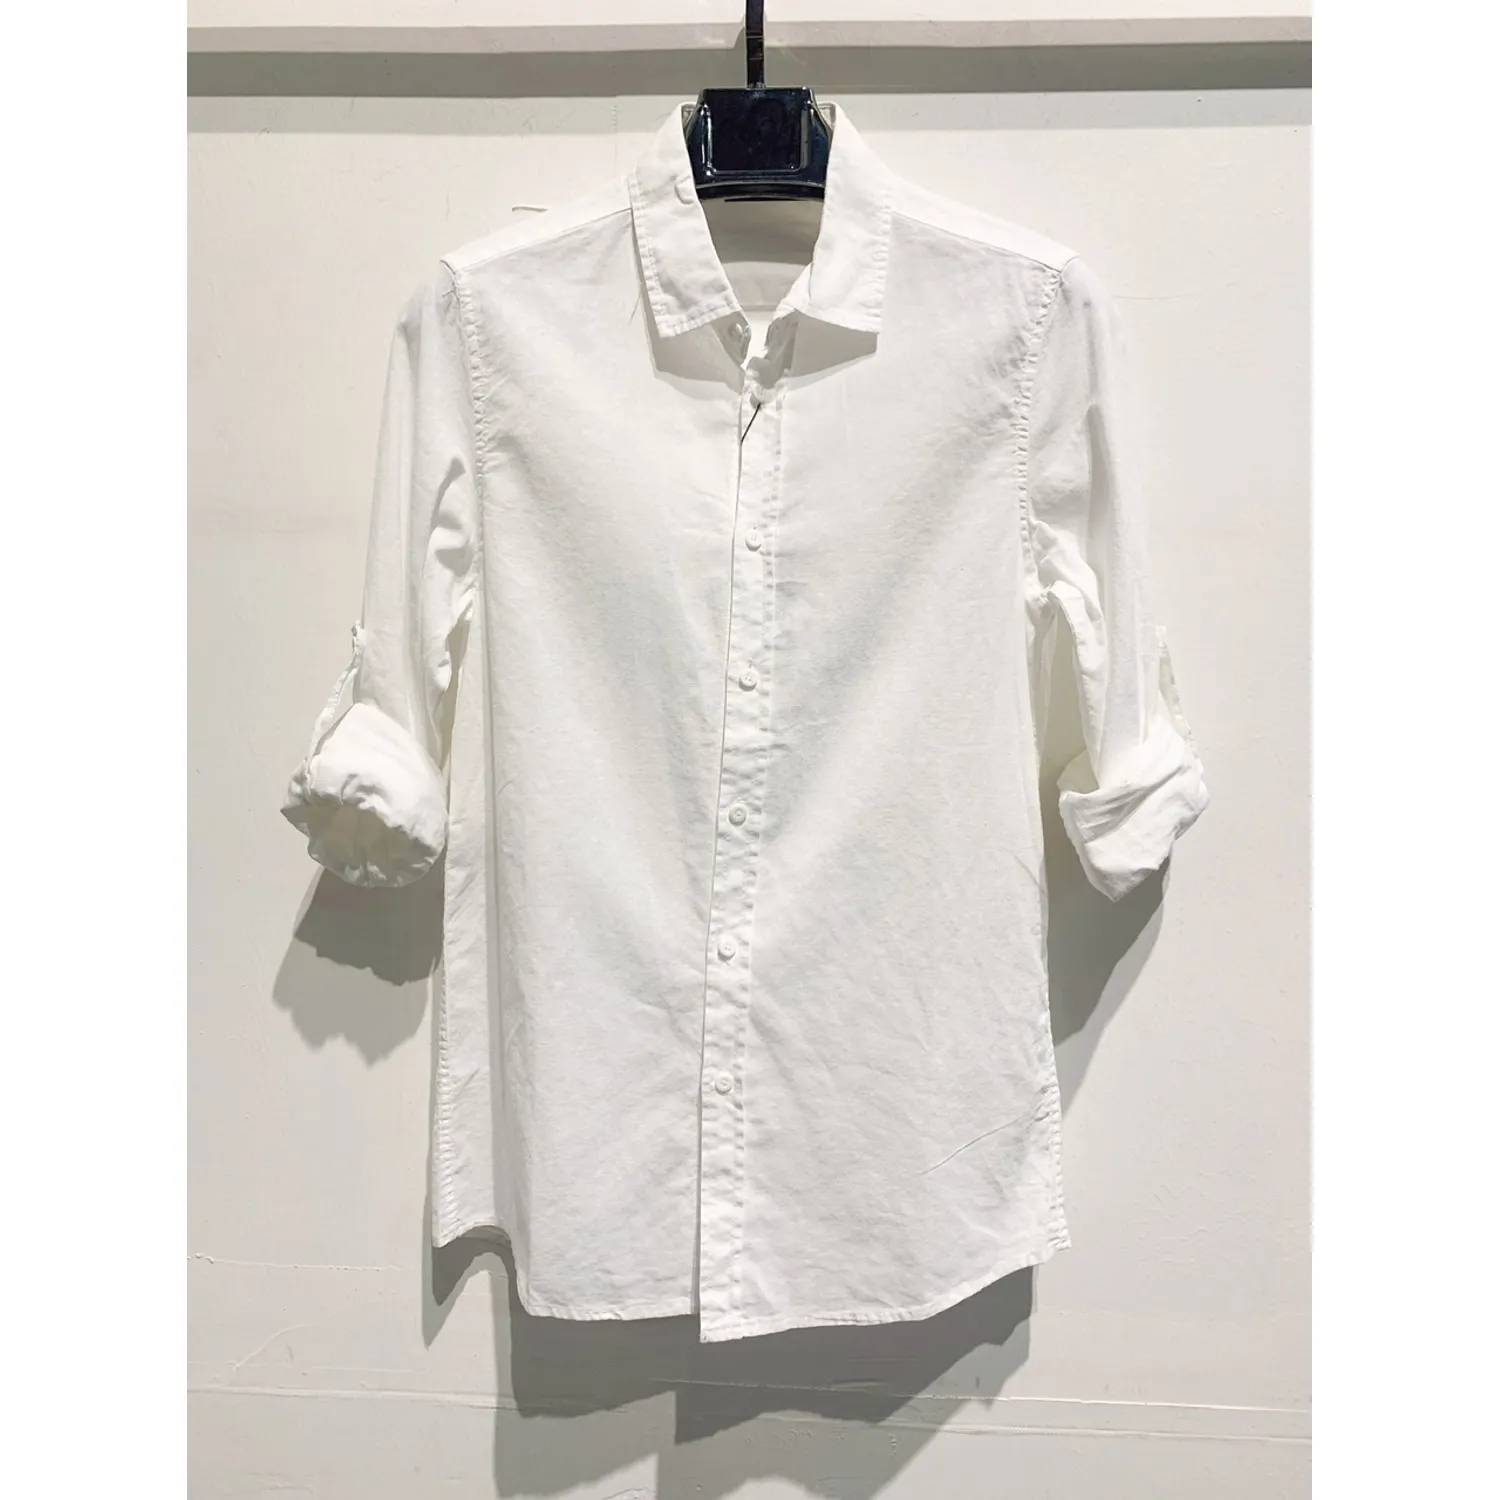 Ανδρικό μακρυμάνικο πουκάμισο λινό λευκό Ι